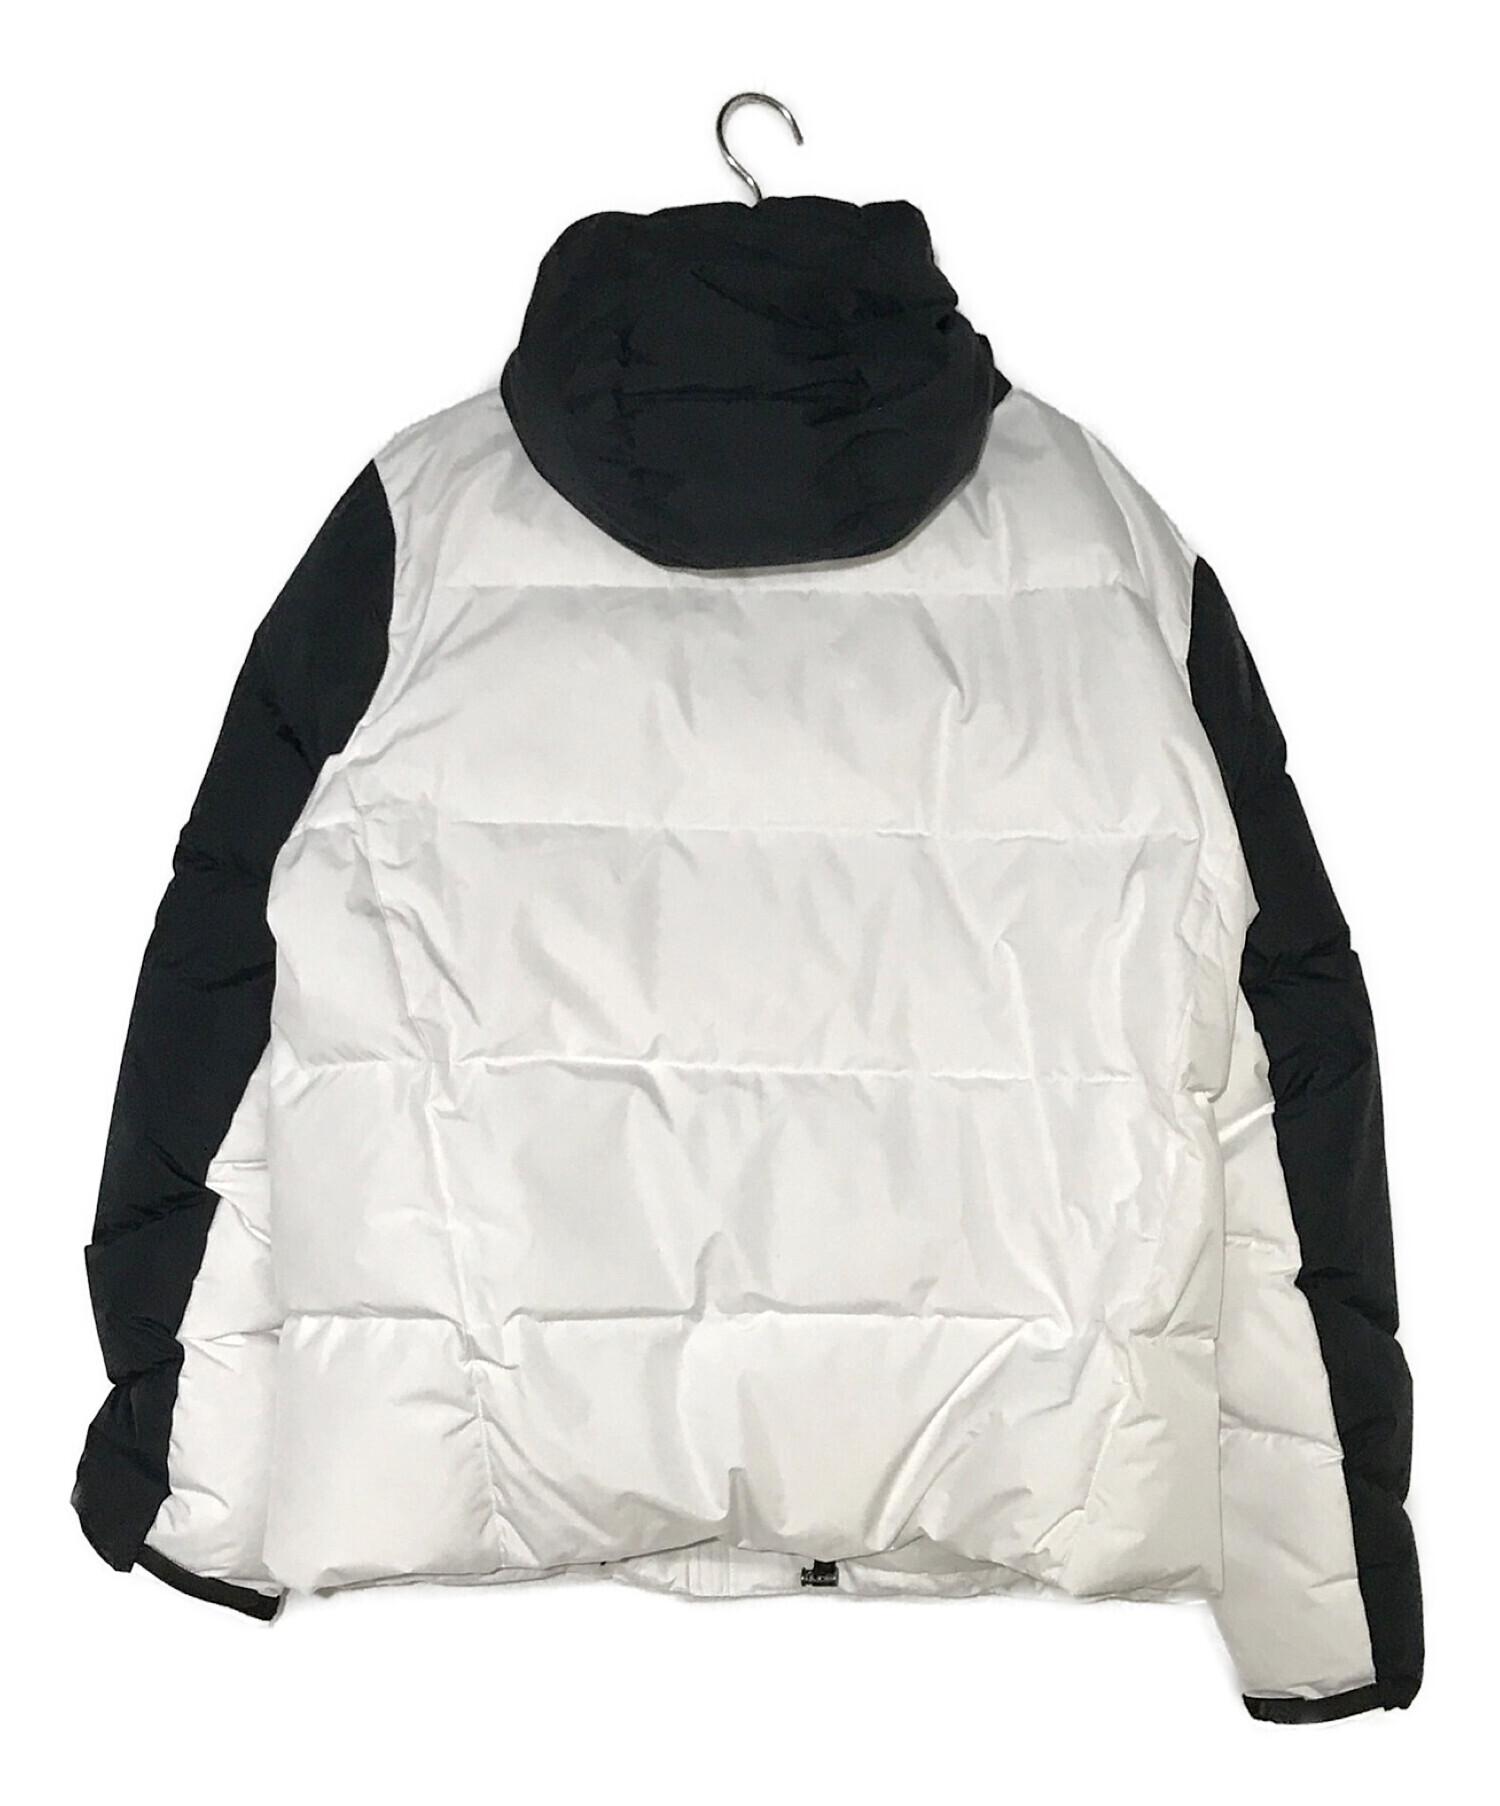 POLO RALPH LAUREN (ポロ・ラルフローレン) ダウンジャケット ホワイト×ブラック サイズ:LG